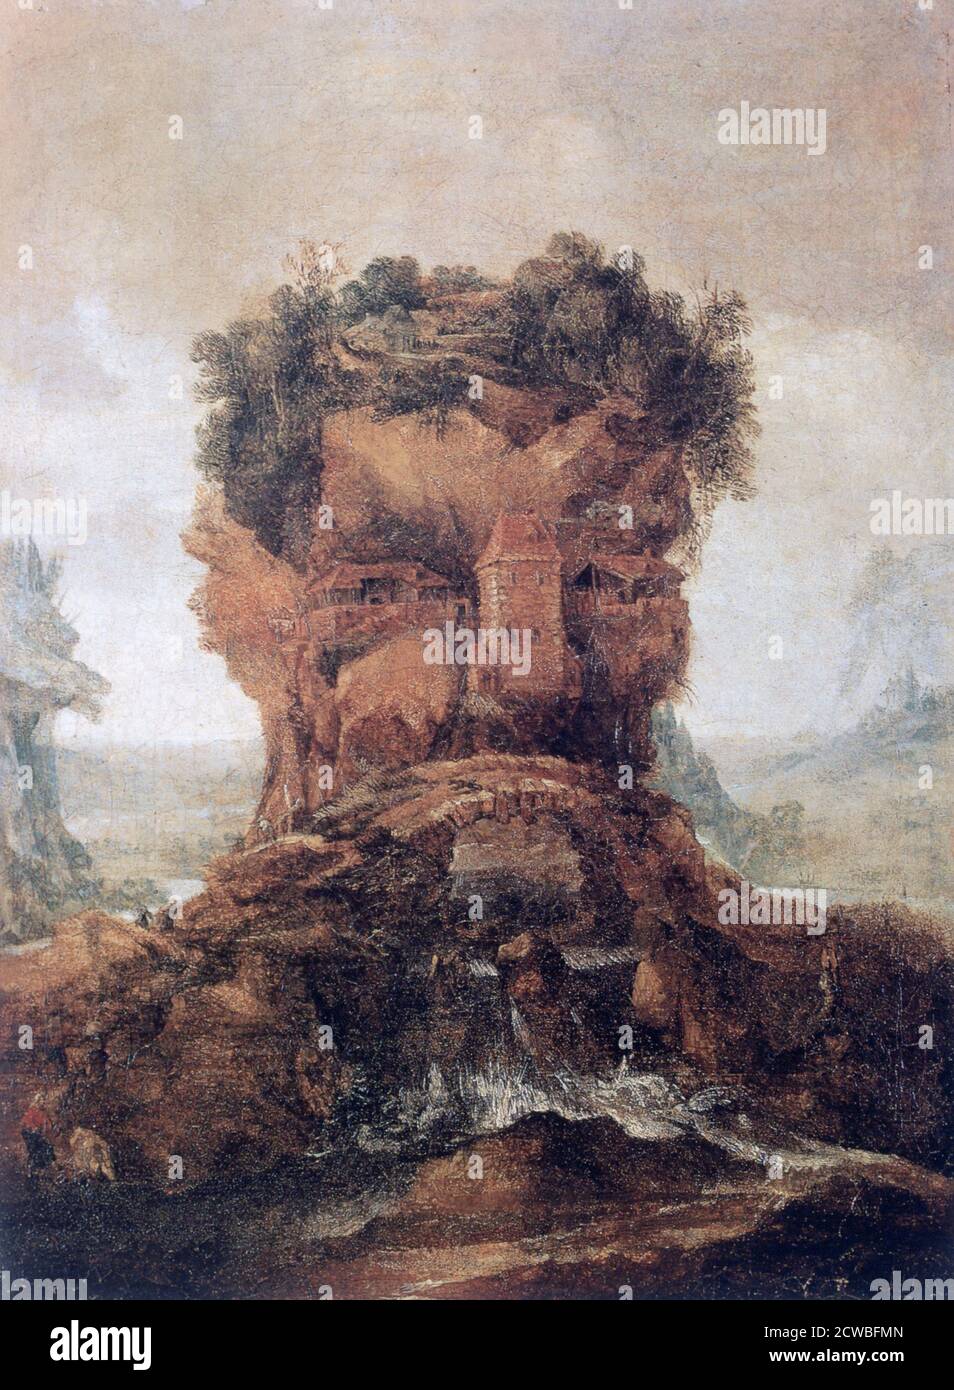 Anthropomorphe Landschaft', c1600-1635. Künstler: Joos de Momper, der Jüngere. Joos de Momper der Jüngere (1564-1635) war einer der bedeutendsten flämischen Landschaftsmaler. Stockfoto